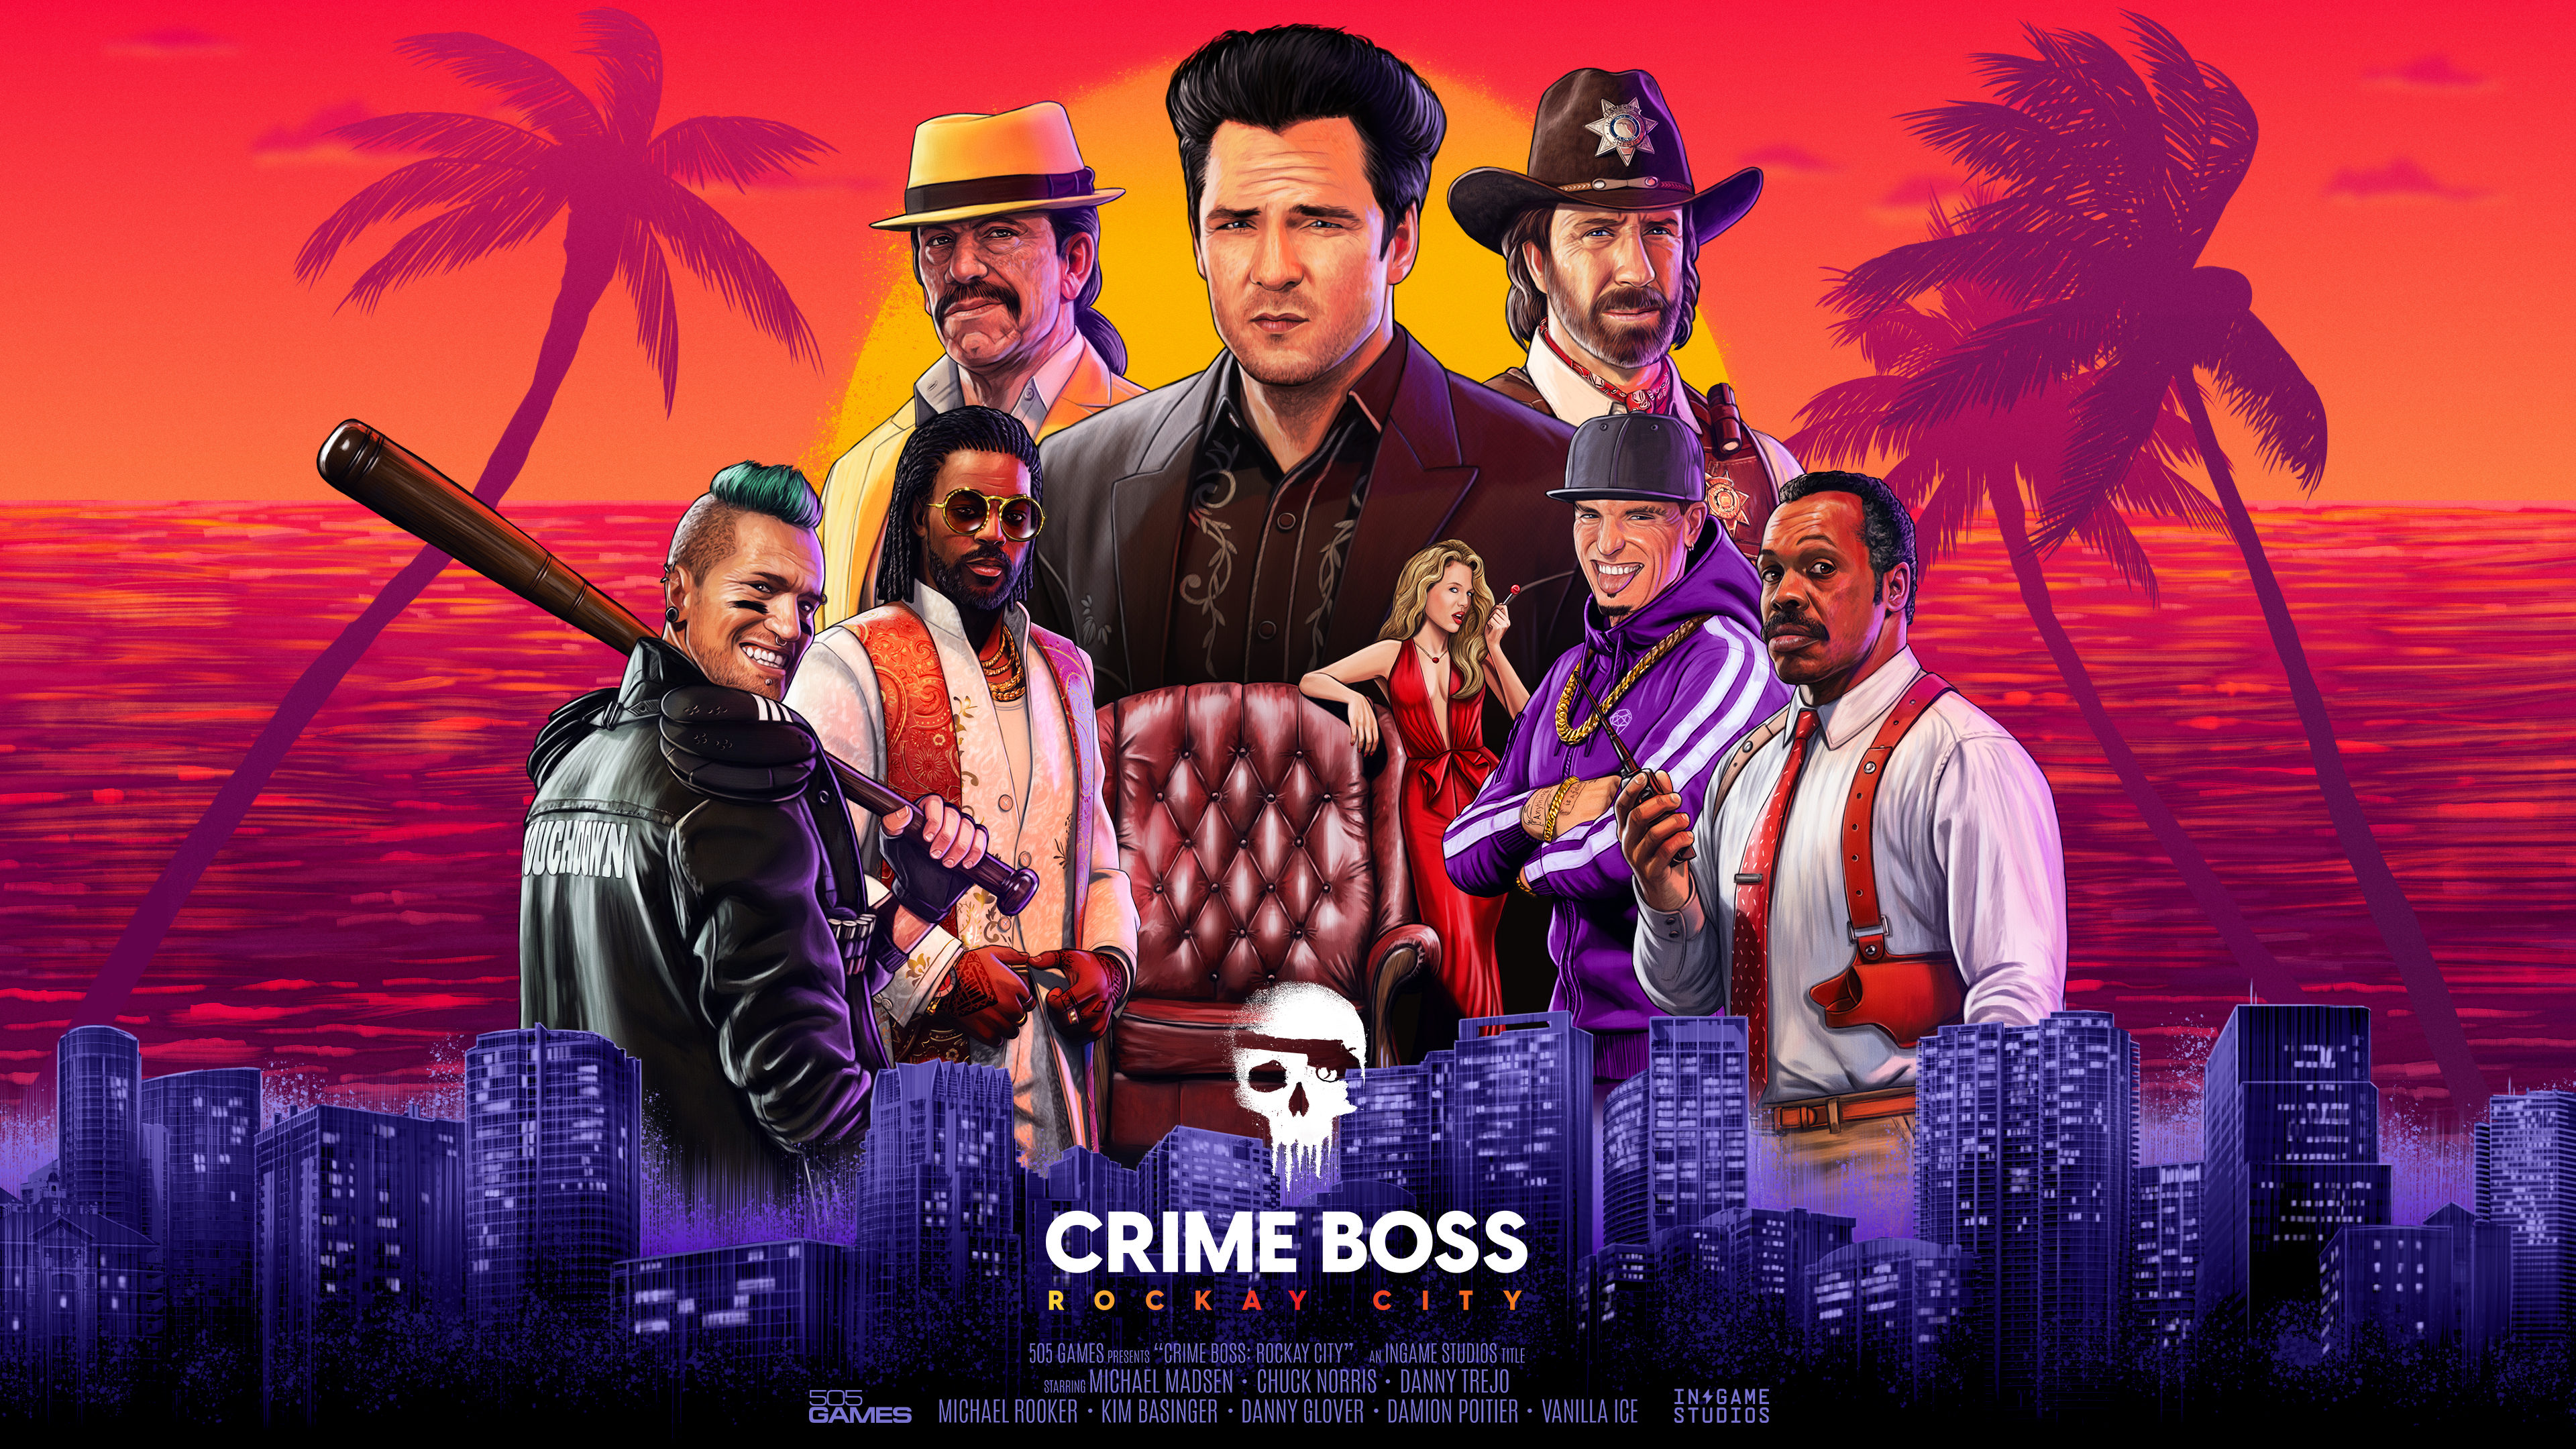 505 games annuncia Crime Boss: Rockay City, il nuovo sparatutto co-op ambientato nel mondo della criminalità organizzata degli anni ‘90